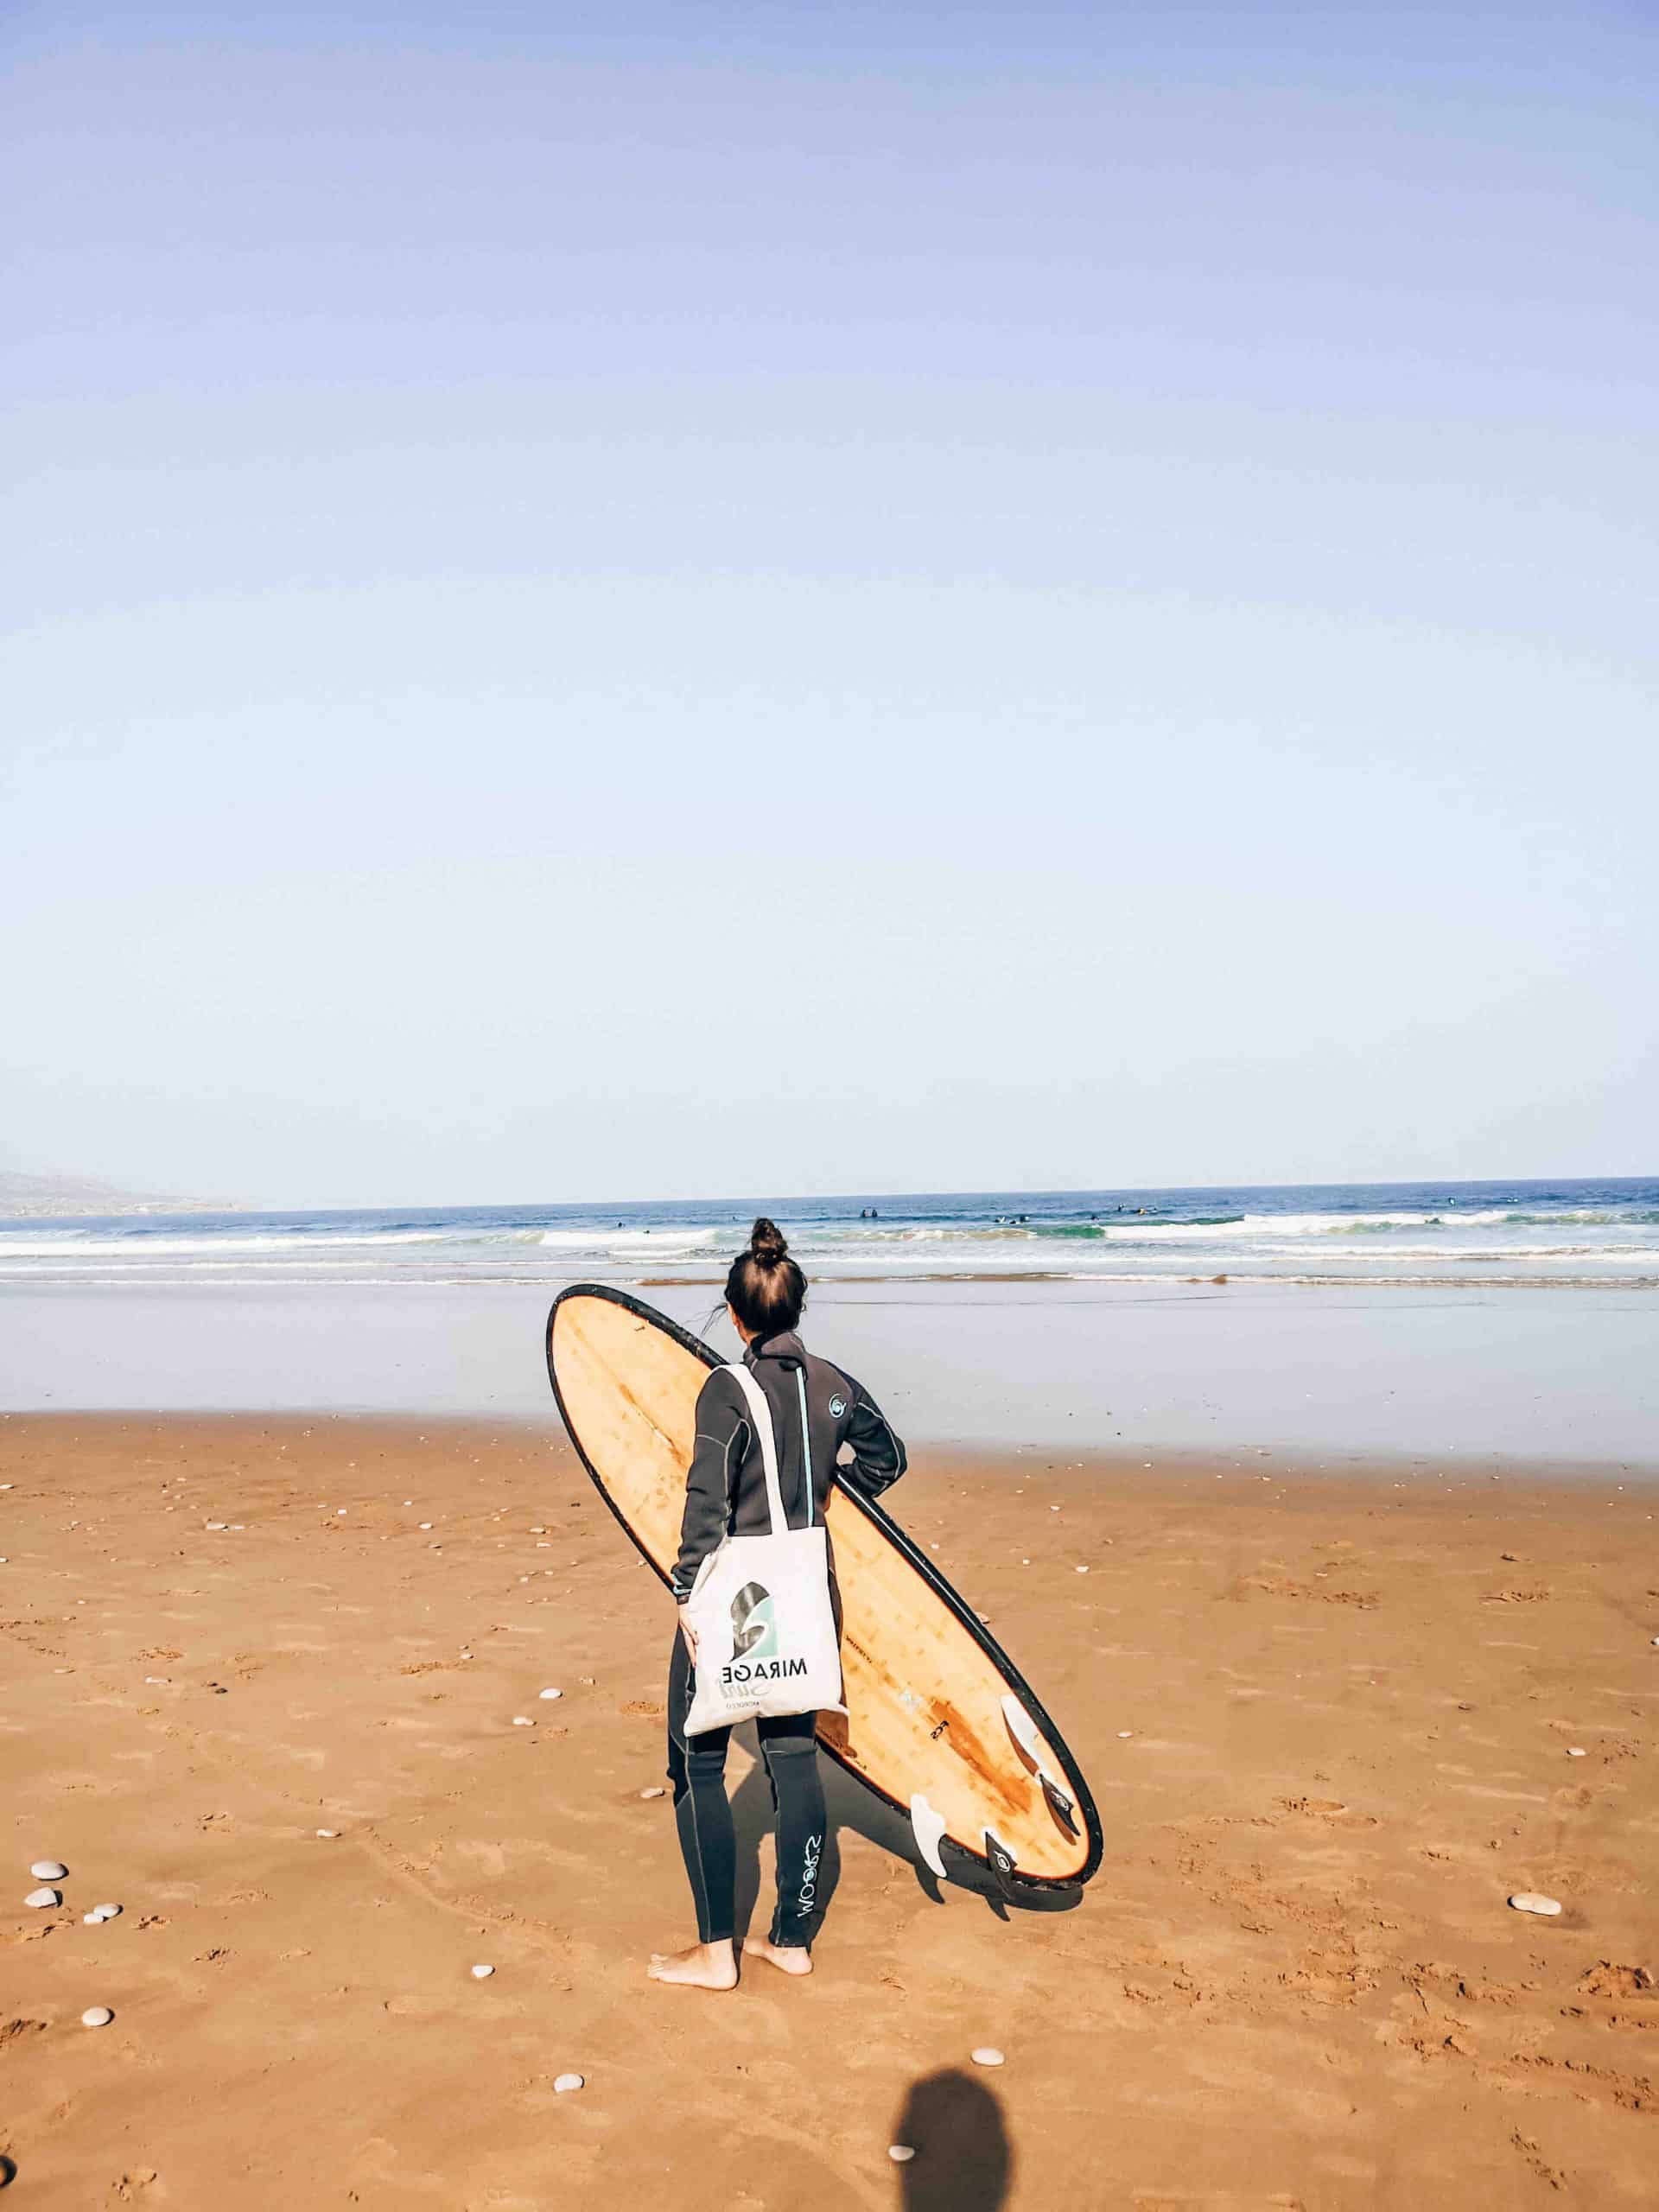 Où surfer au Maroc en hiver ?